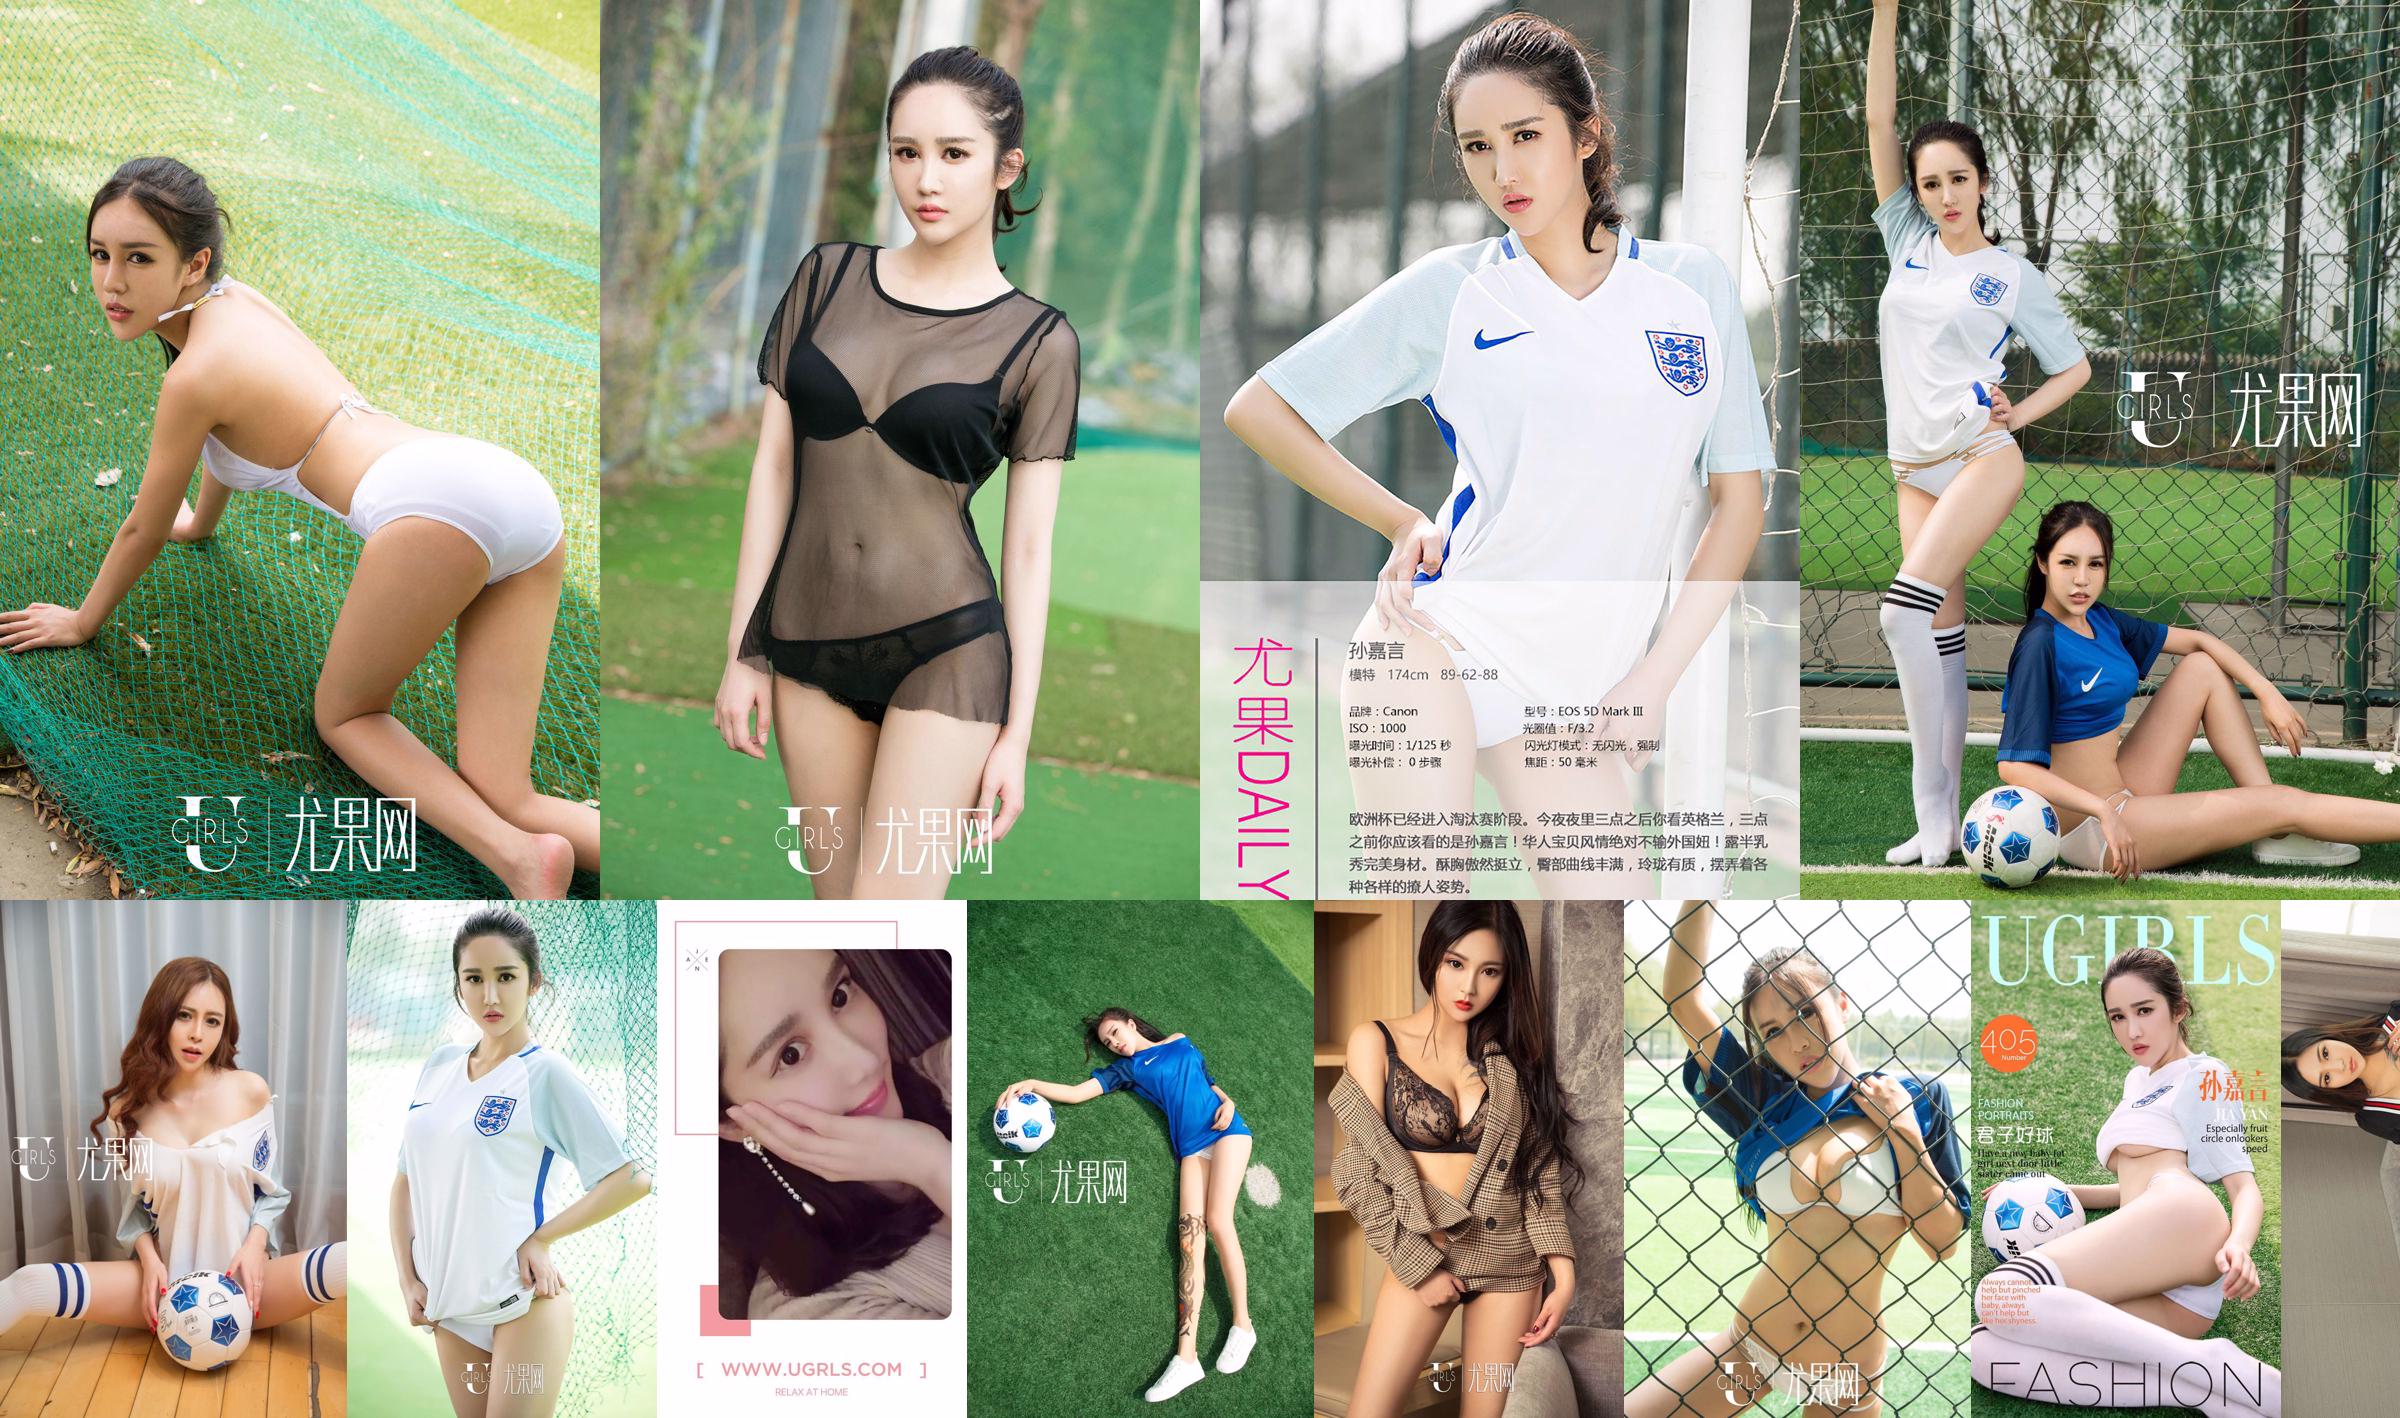 Sun Jiayan / Little Wisteria / Jin Xin / Li Yaying / Chun Jiao "Football Baby" [Ugirls] T019 No.c9303c Page 14